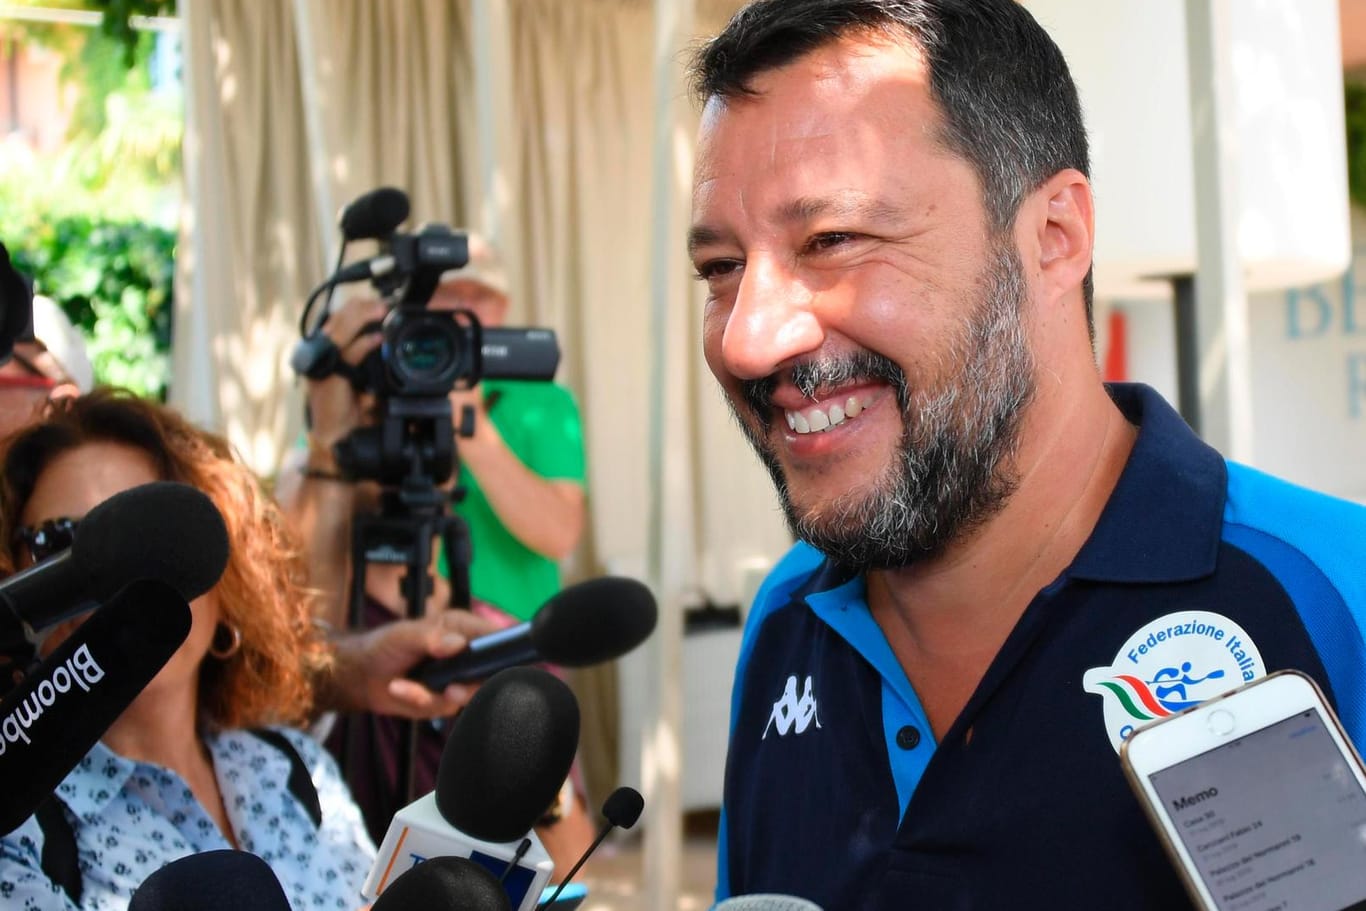 Matteo Salvini bei einer Pressekonferenz: Der Lega-Chef hat das Regierungsbündnis in Italien aufgekündigt.